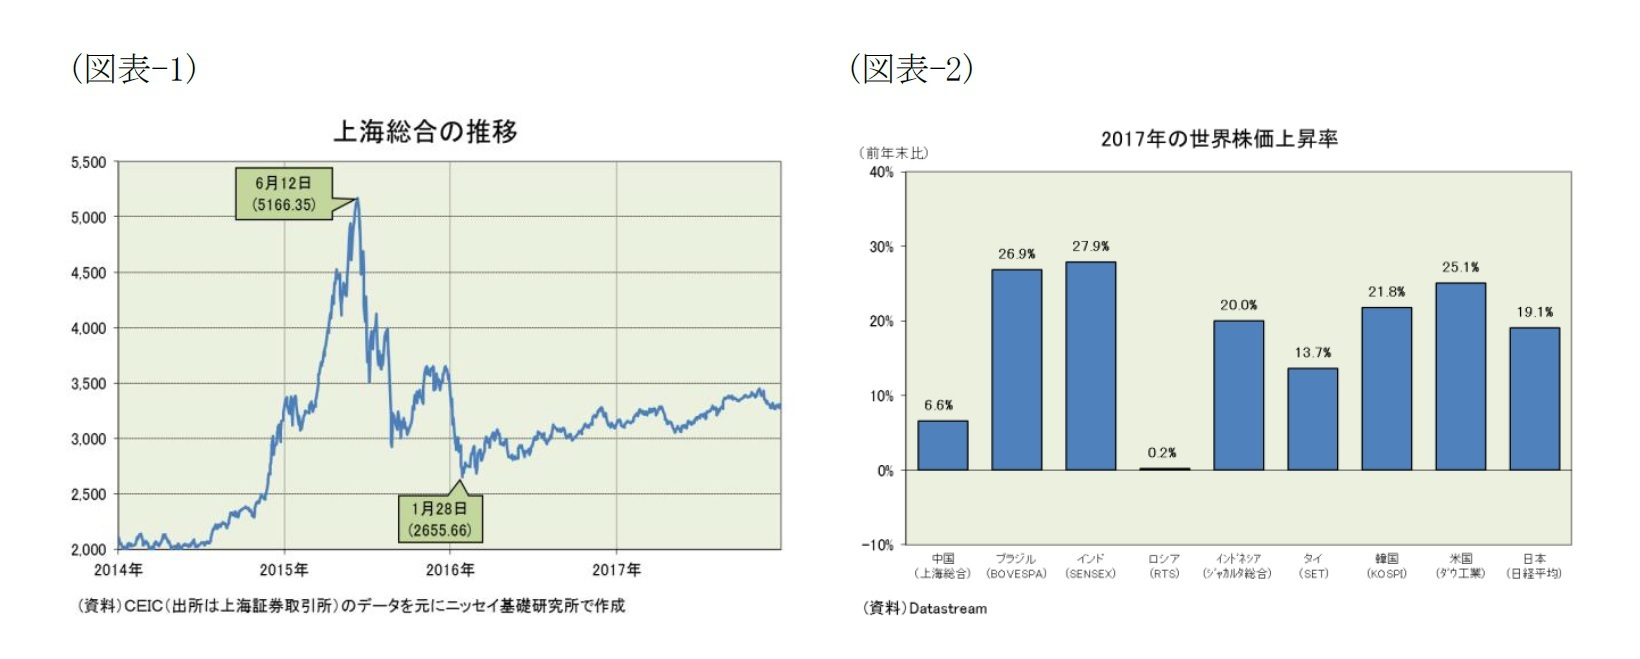 （図表-1）上海総合の推移/（図表-2）2017年の世界株価上昇率